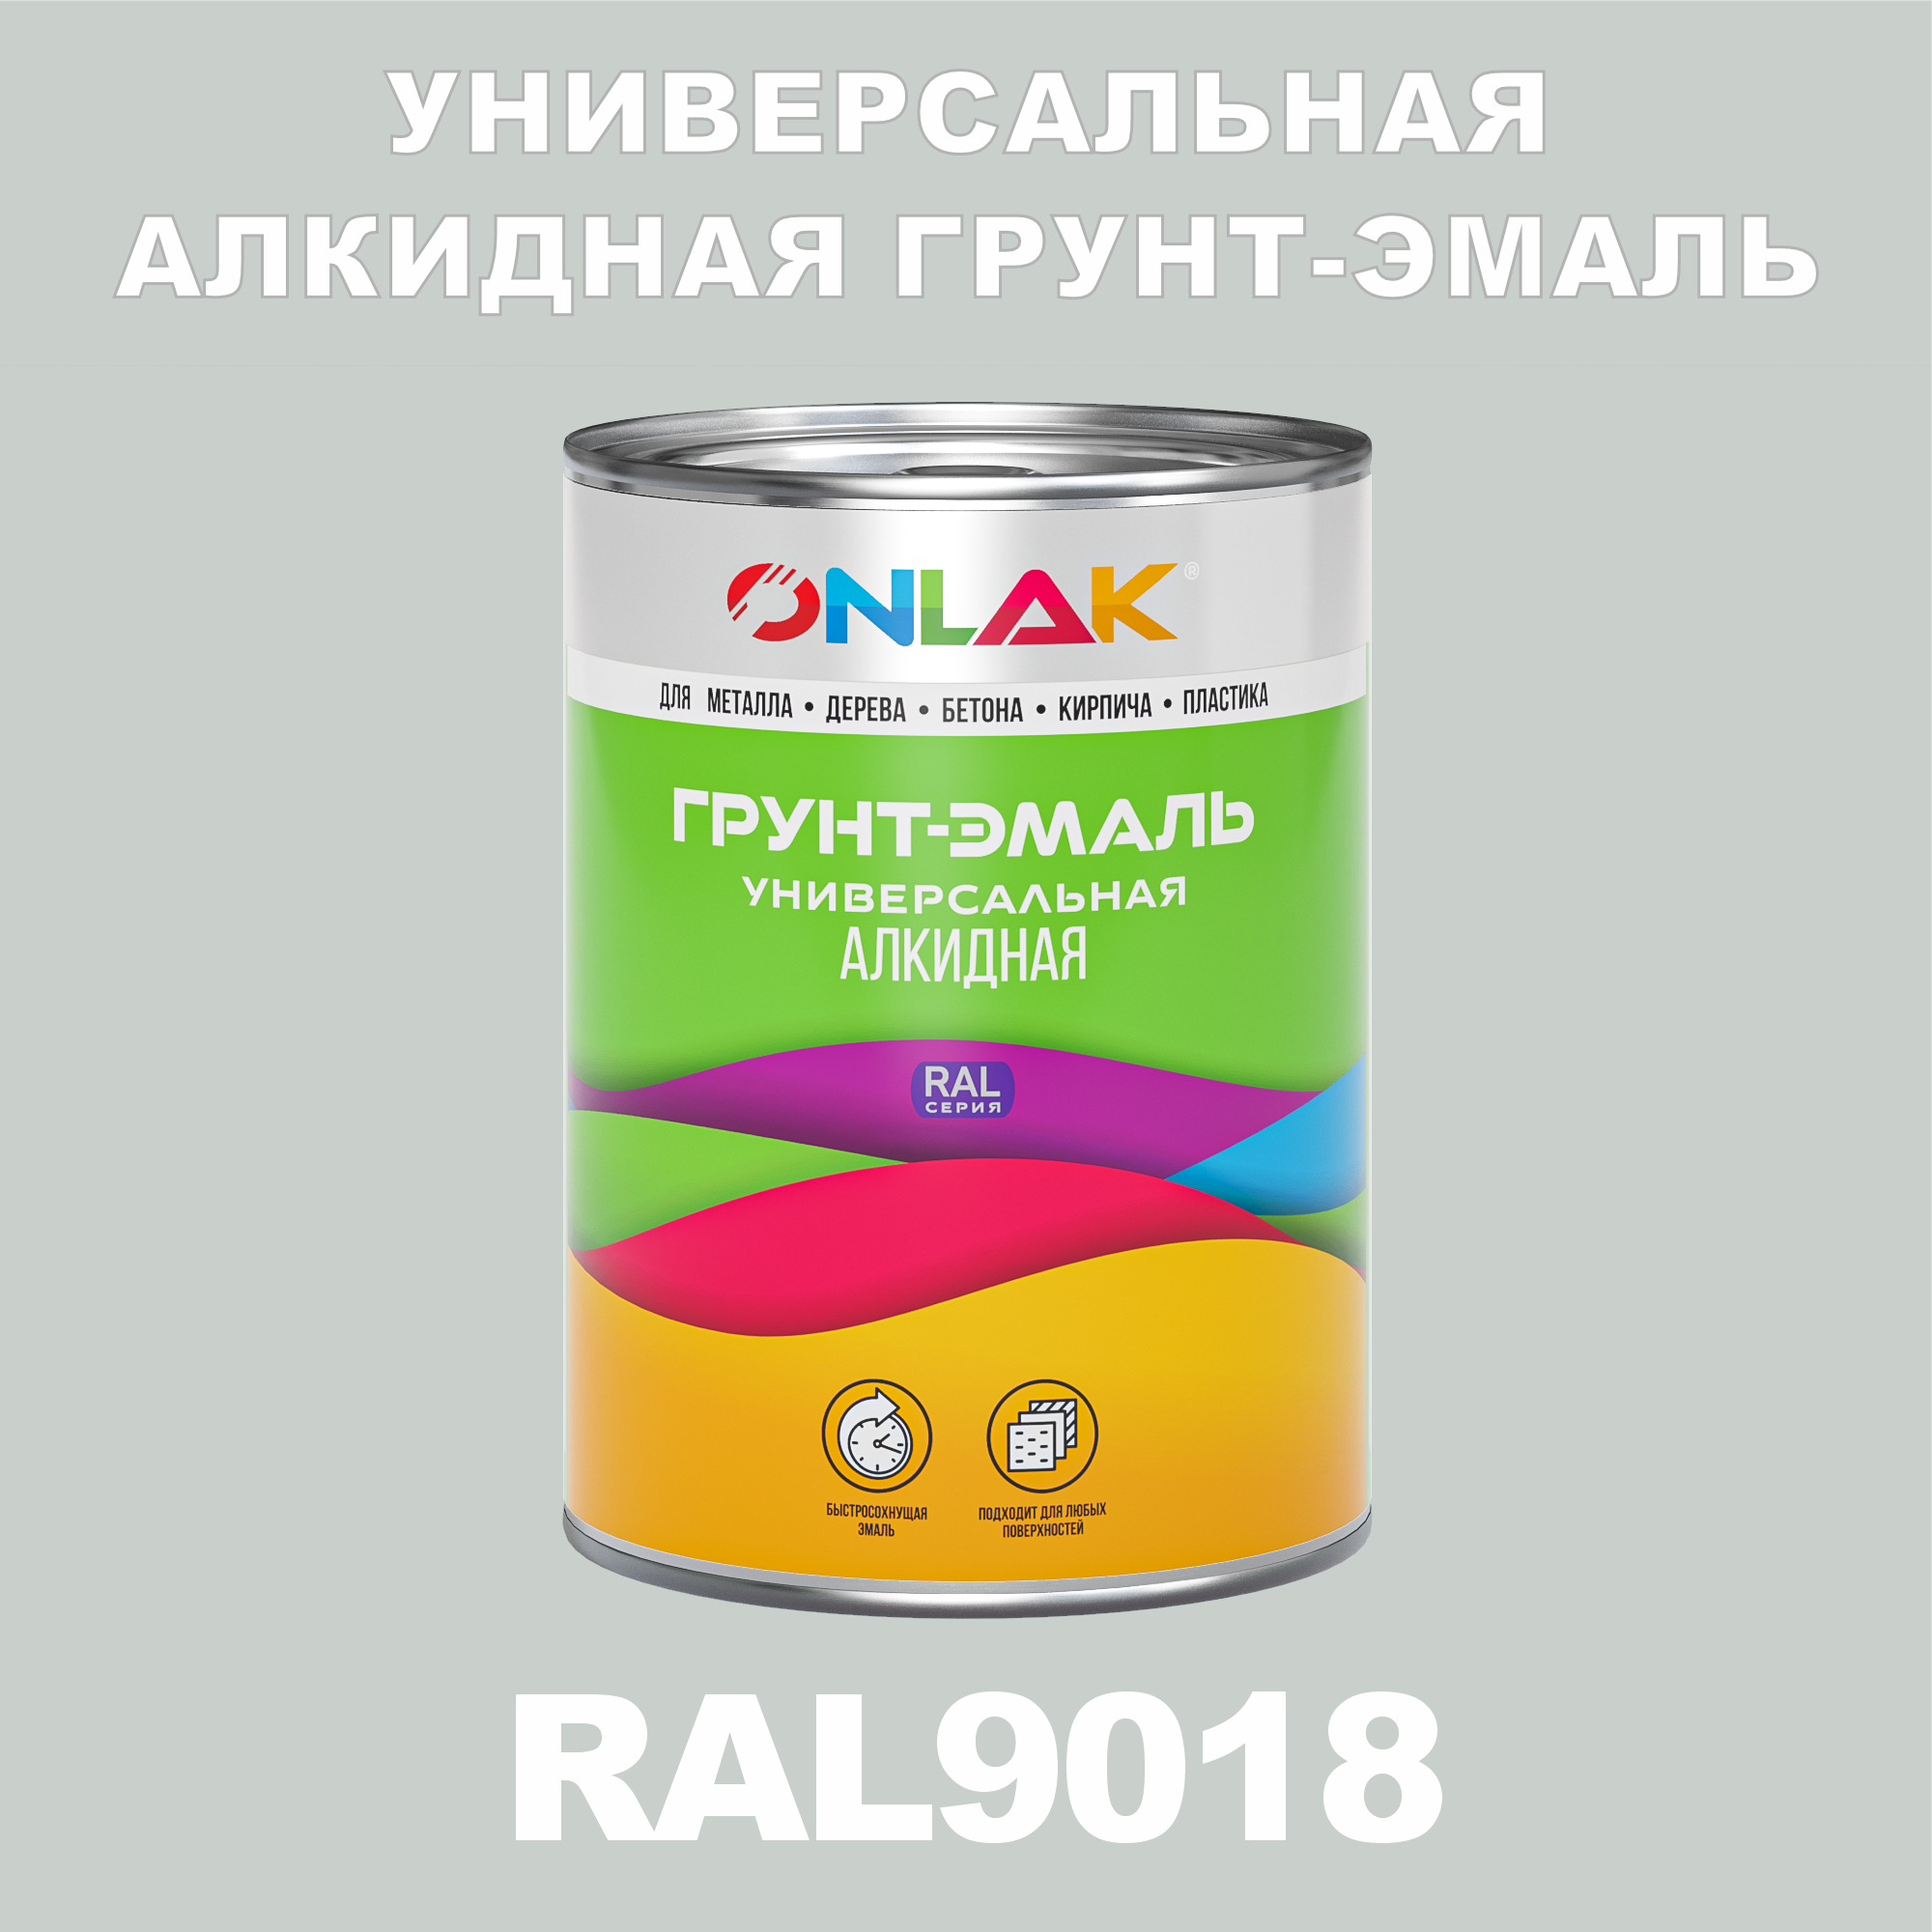 Грунт-эмаль ONLAK 1К RAL9018 антикоррозионная алкидная, по металлу, по ржавчине, 1 кг, грунт эмаль yollo по ржавчине алкидная белая 0 9 кг